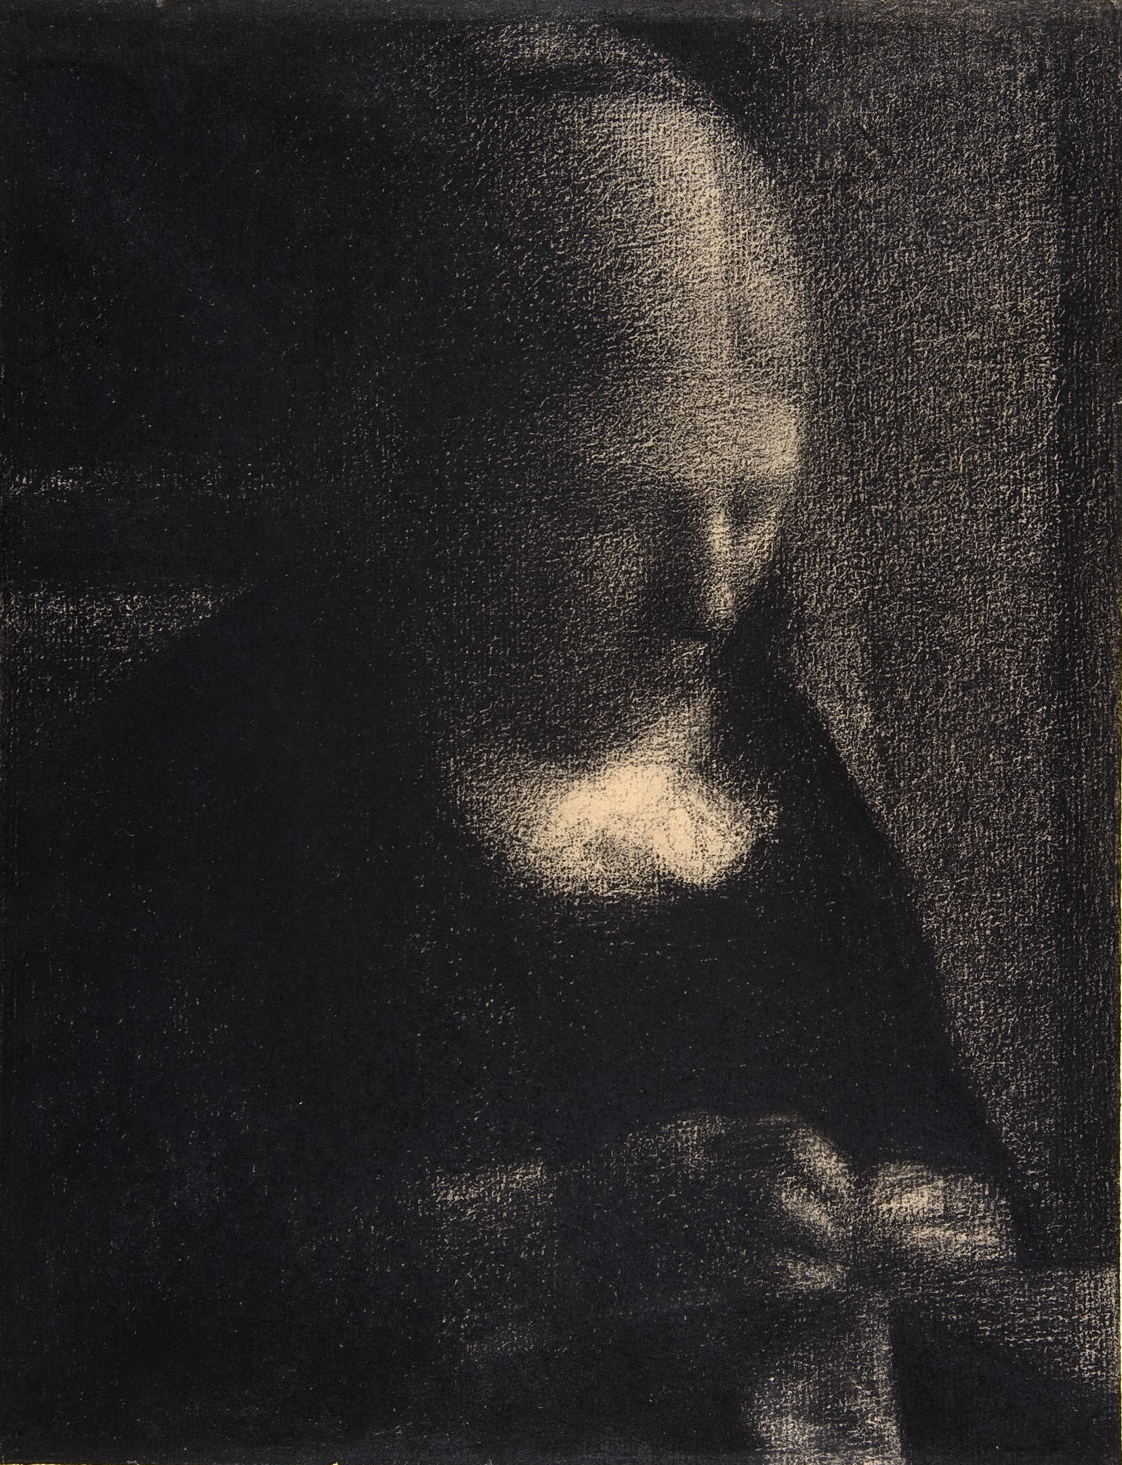 Georges+Seurat-1859-1891 (36).jpg